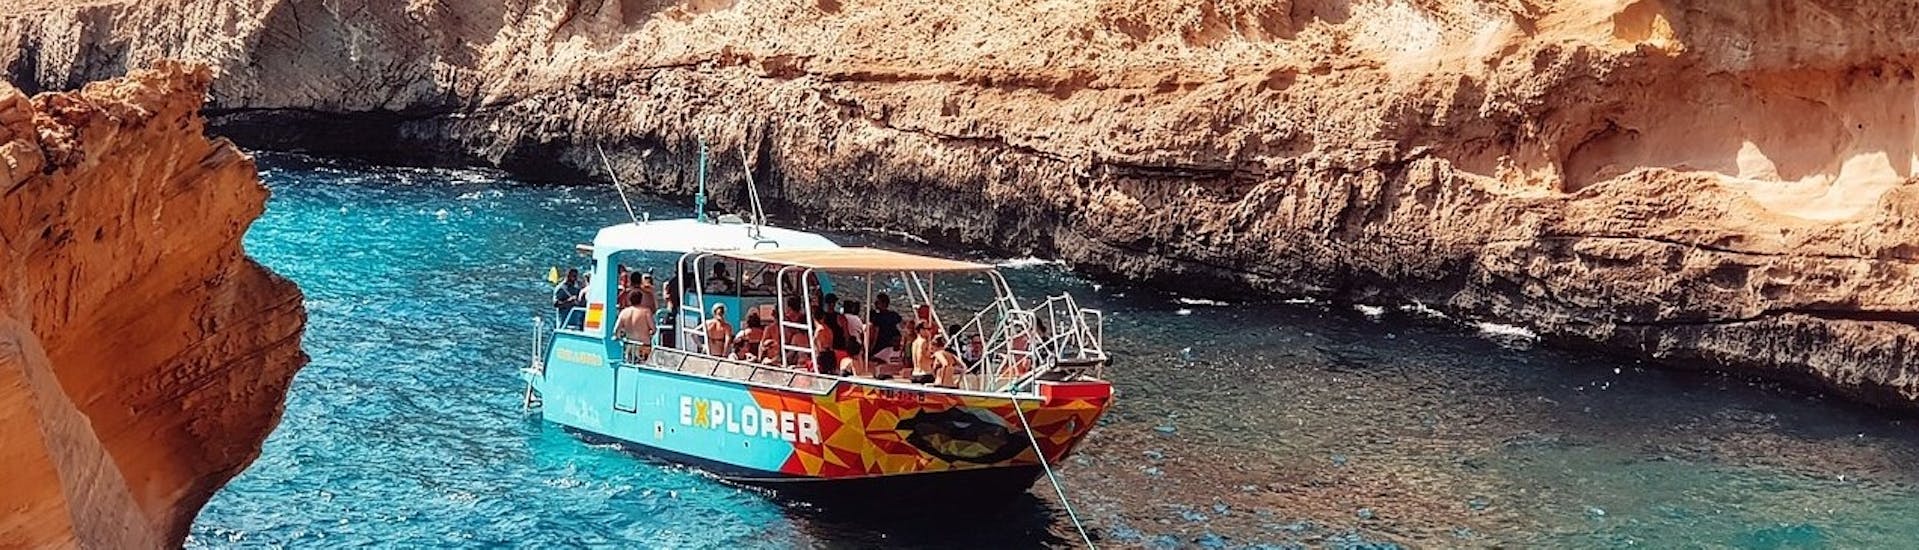 Bootstour von Palma de Mallorca mit Schwimmen & Sightseeing.